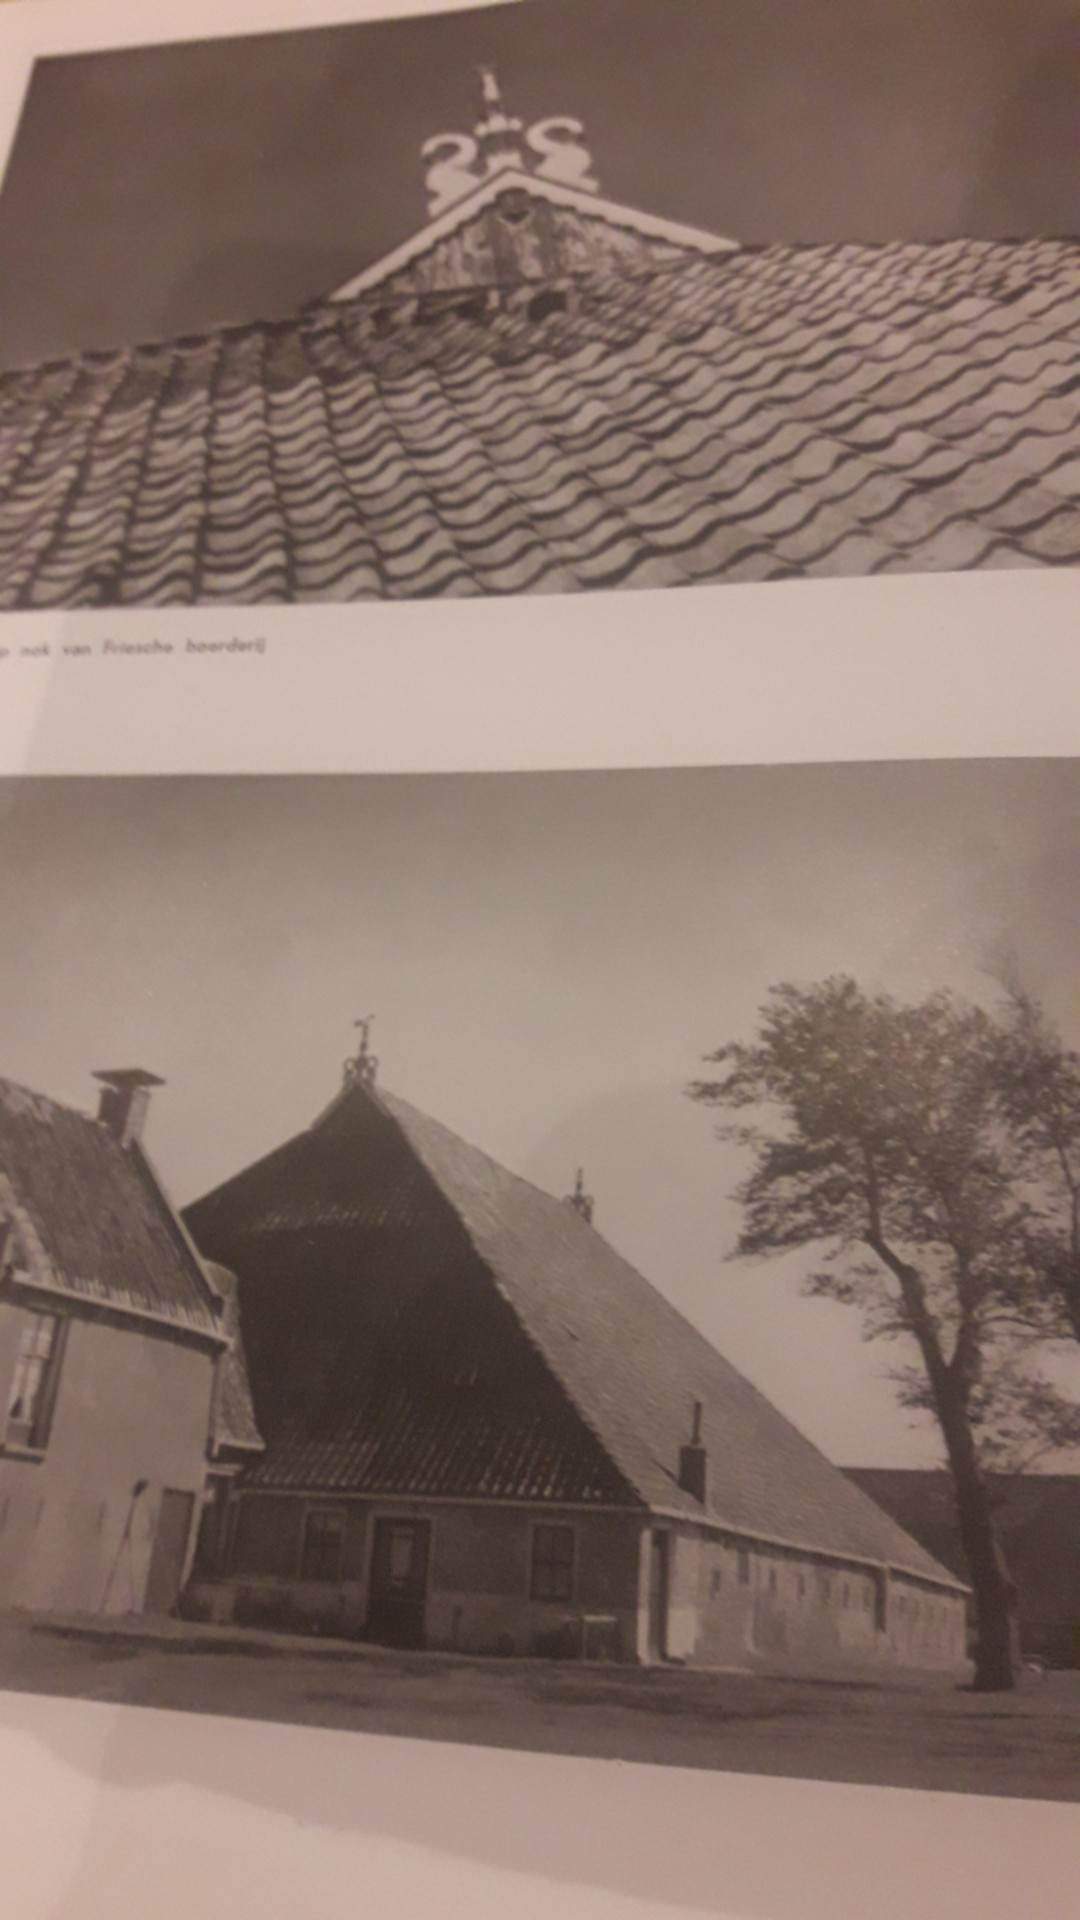 ZELDZAAM ! - Van Flevo tot IJselmeer - uitgeverij Holle 1943 / 174 blz